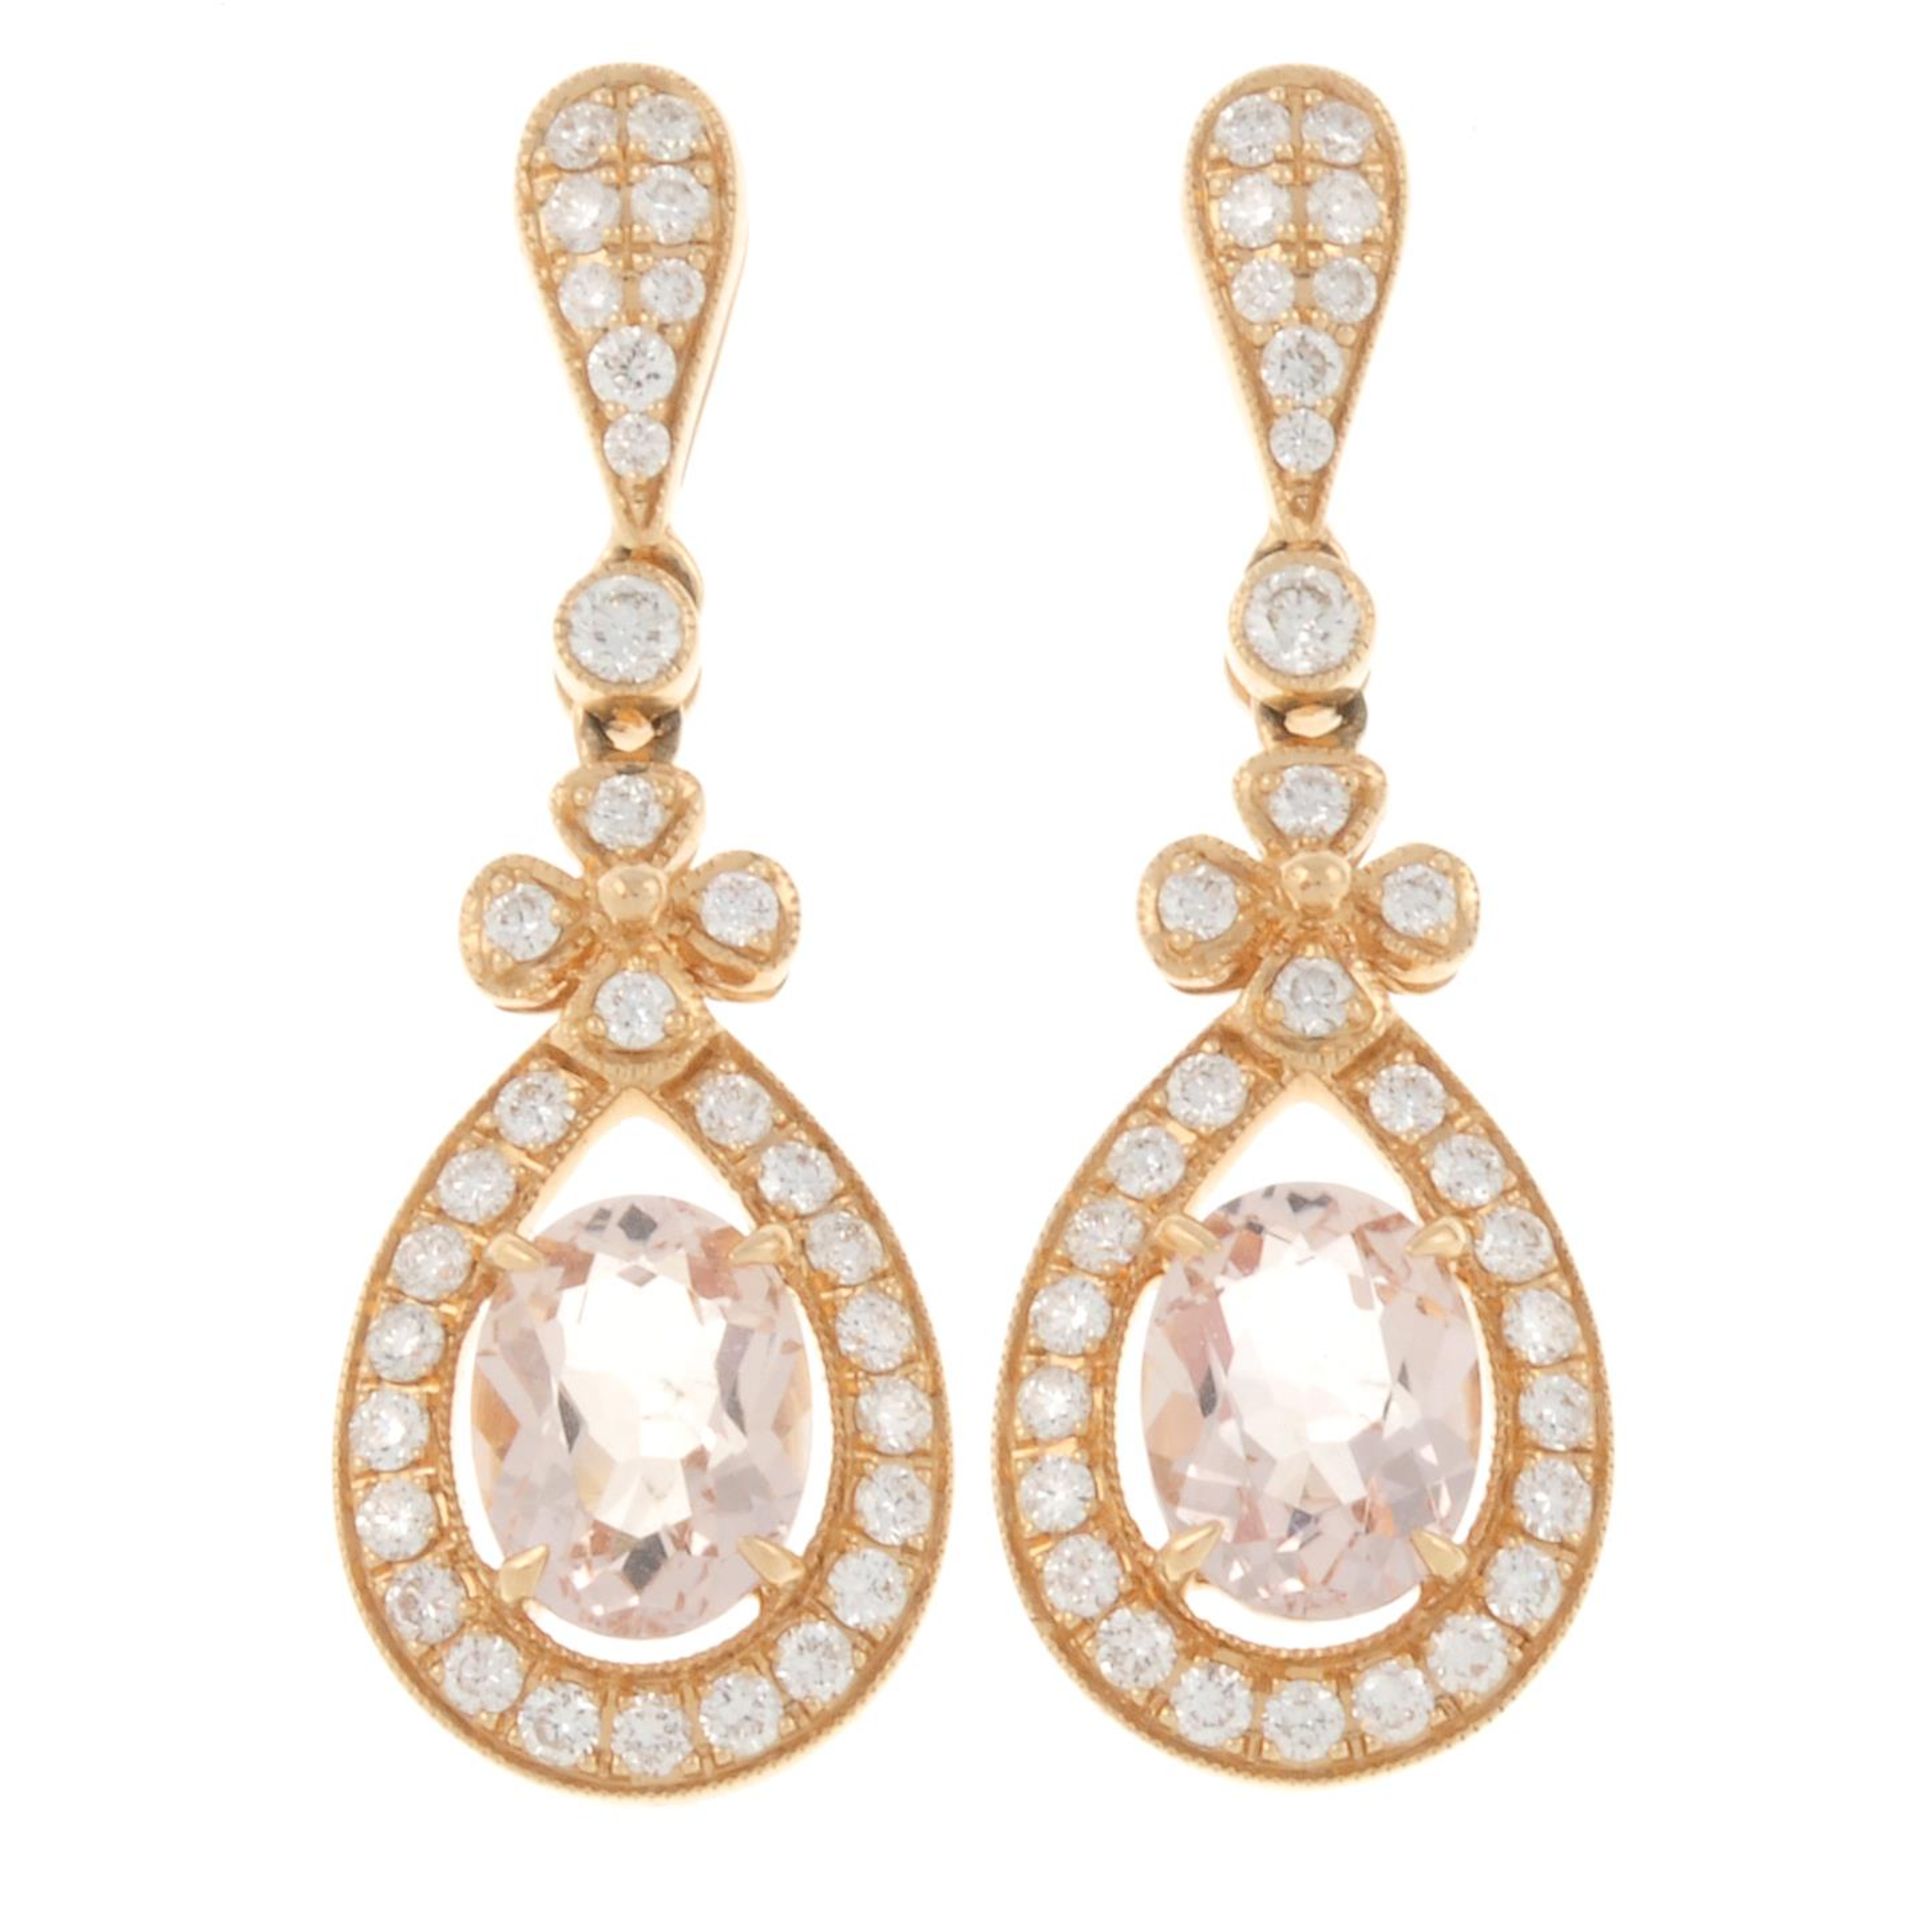 A pair of 18ct gold brilliant-cut diamond and morganite drop earrings.Total morganite weight